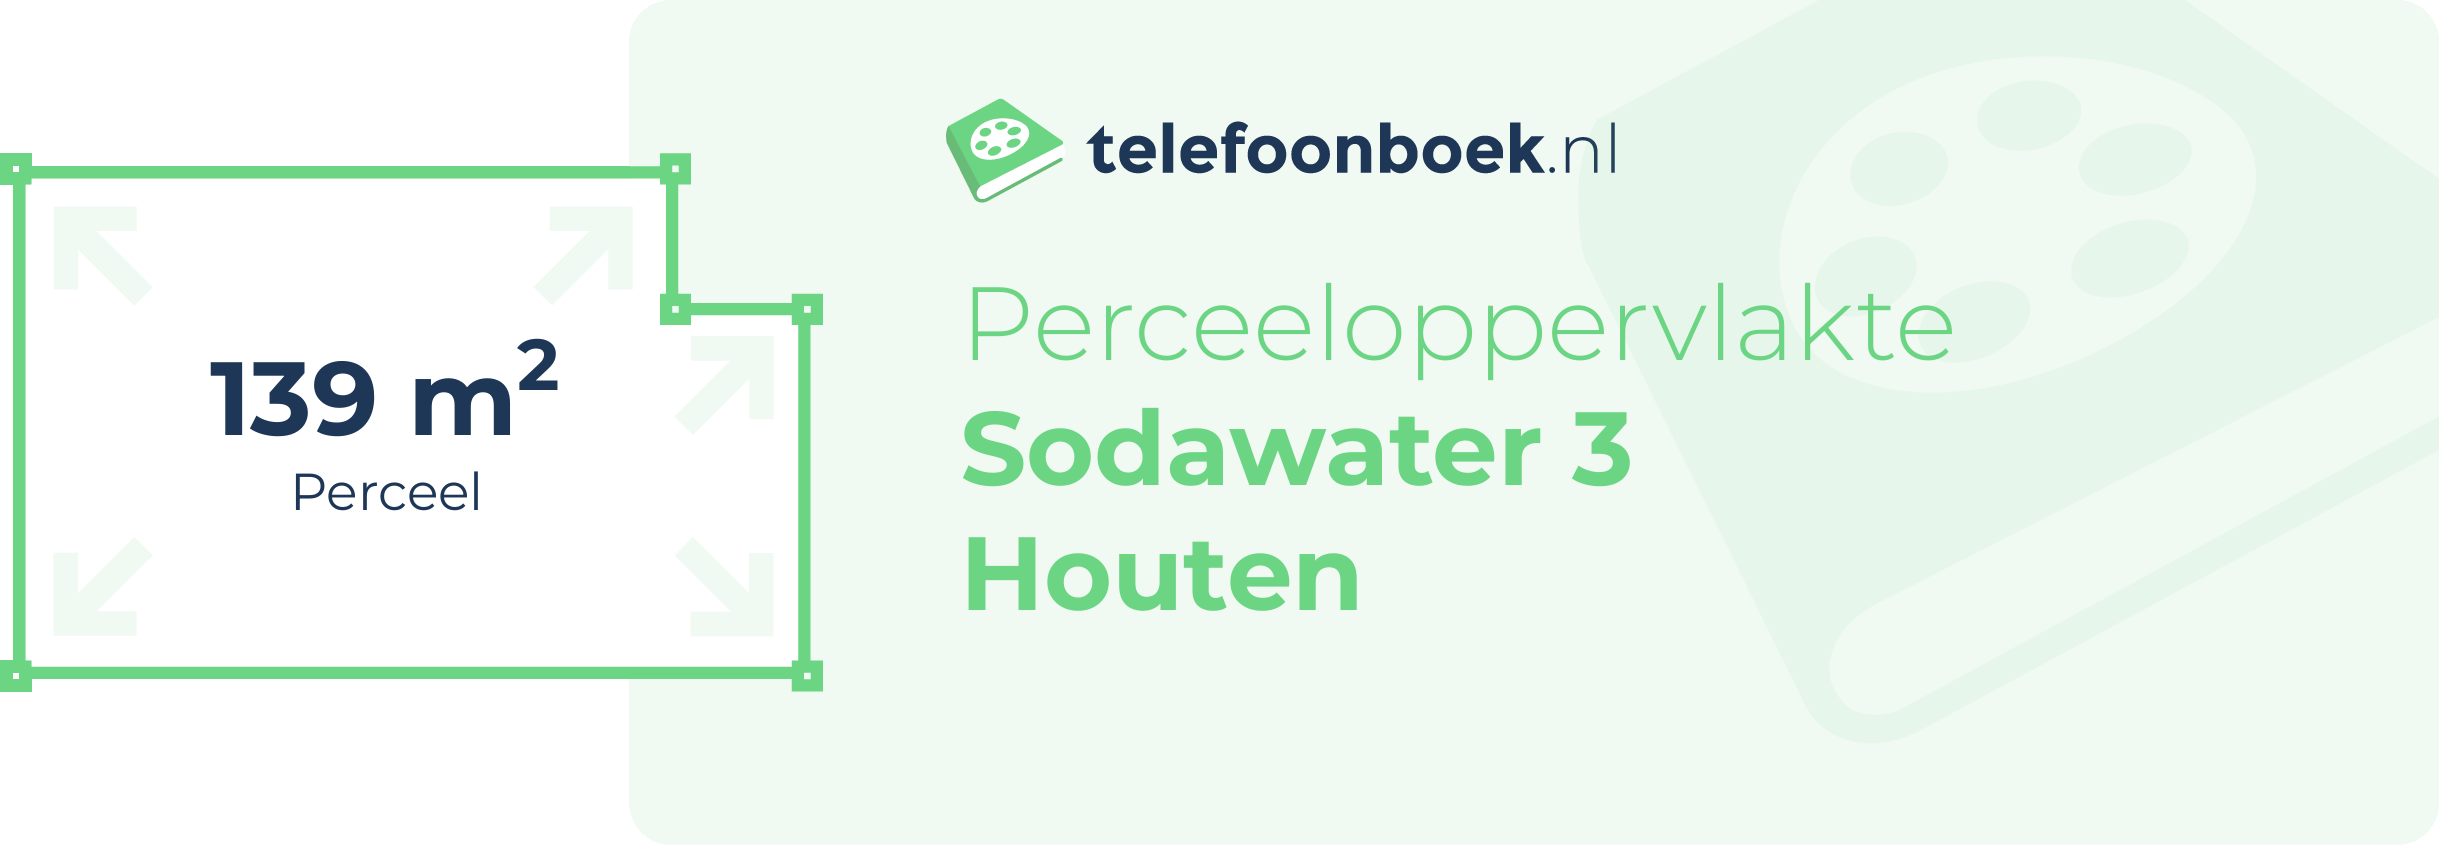 Perceeloppervlakte Sodawater 3 Houten